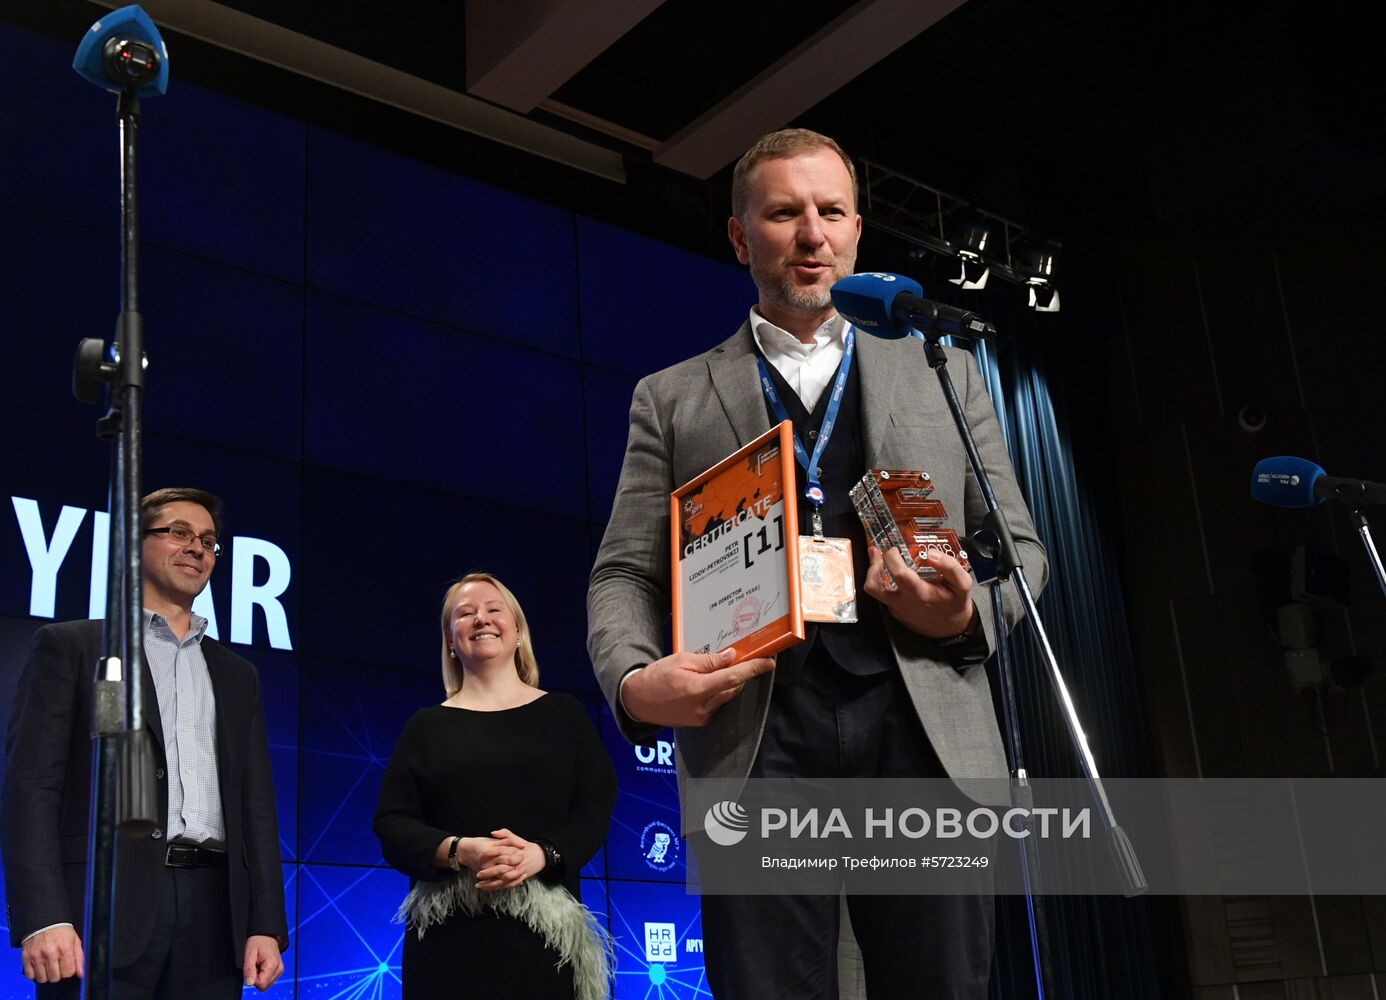 Награждение лауреатов премии Европы Eventiada IPRA GWA 2018